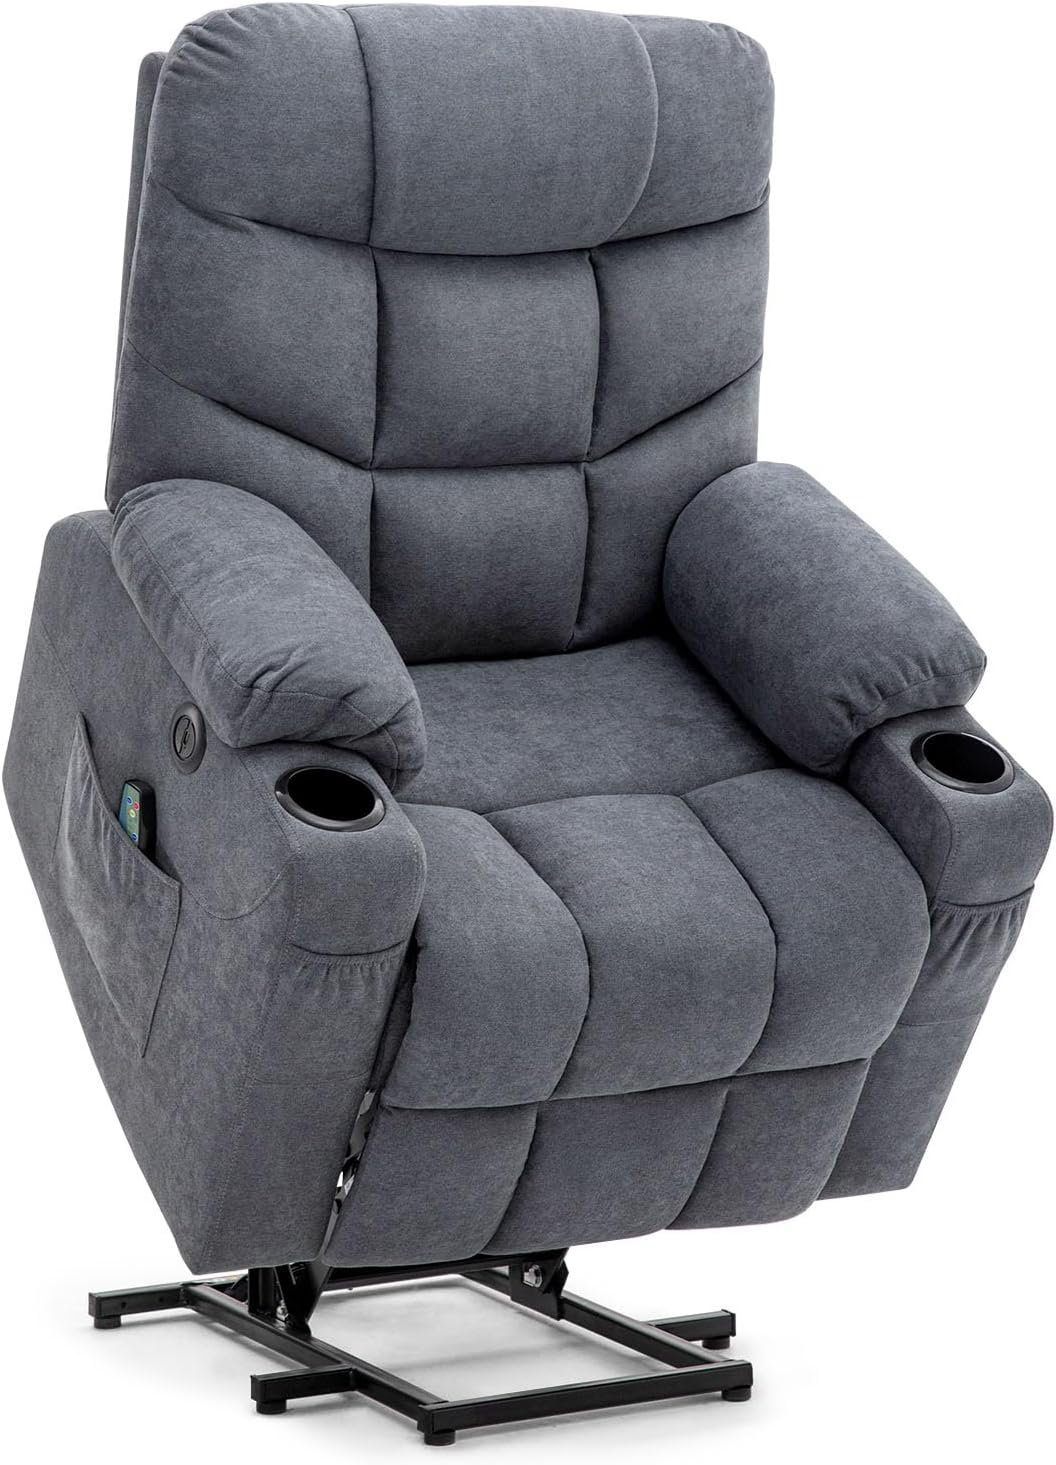 https://assets.wfcdn.com/im/50674359/compr-r85/2618/261811697/upholstered-heated-massage-chair.jpg